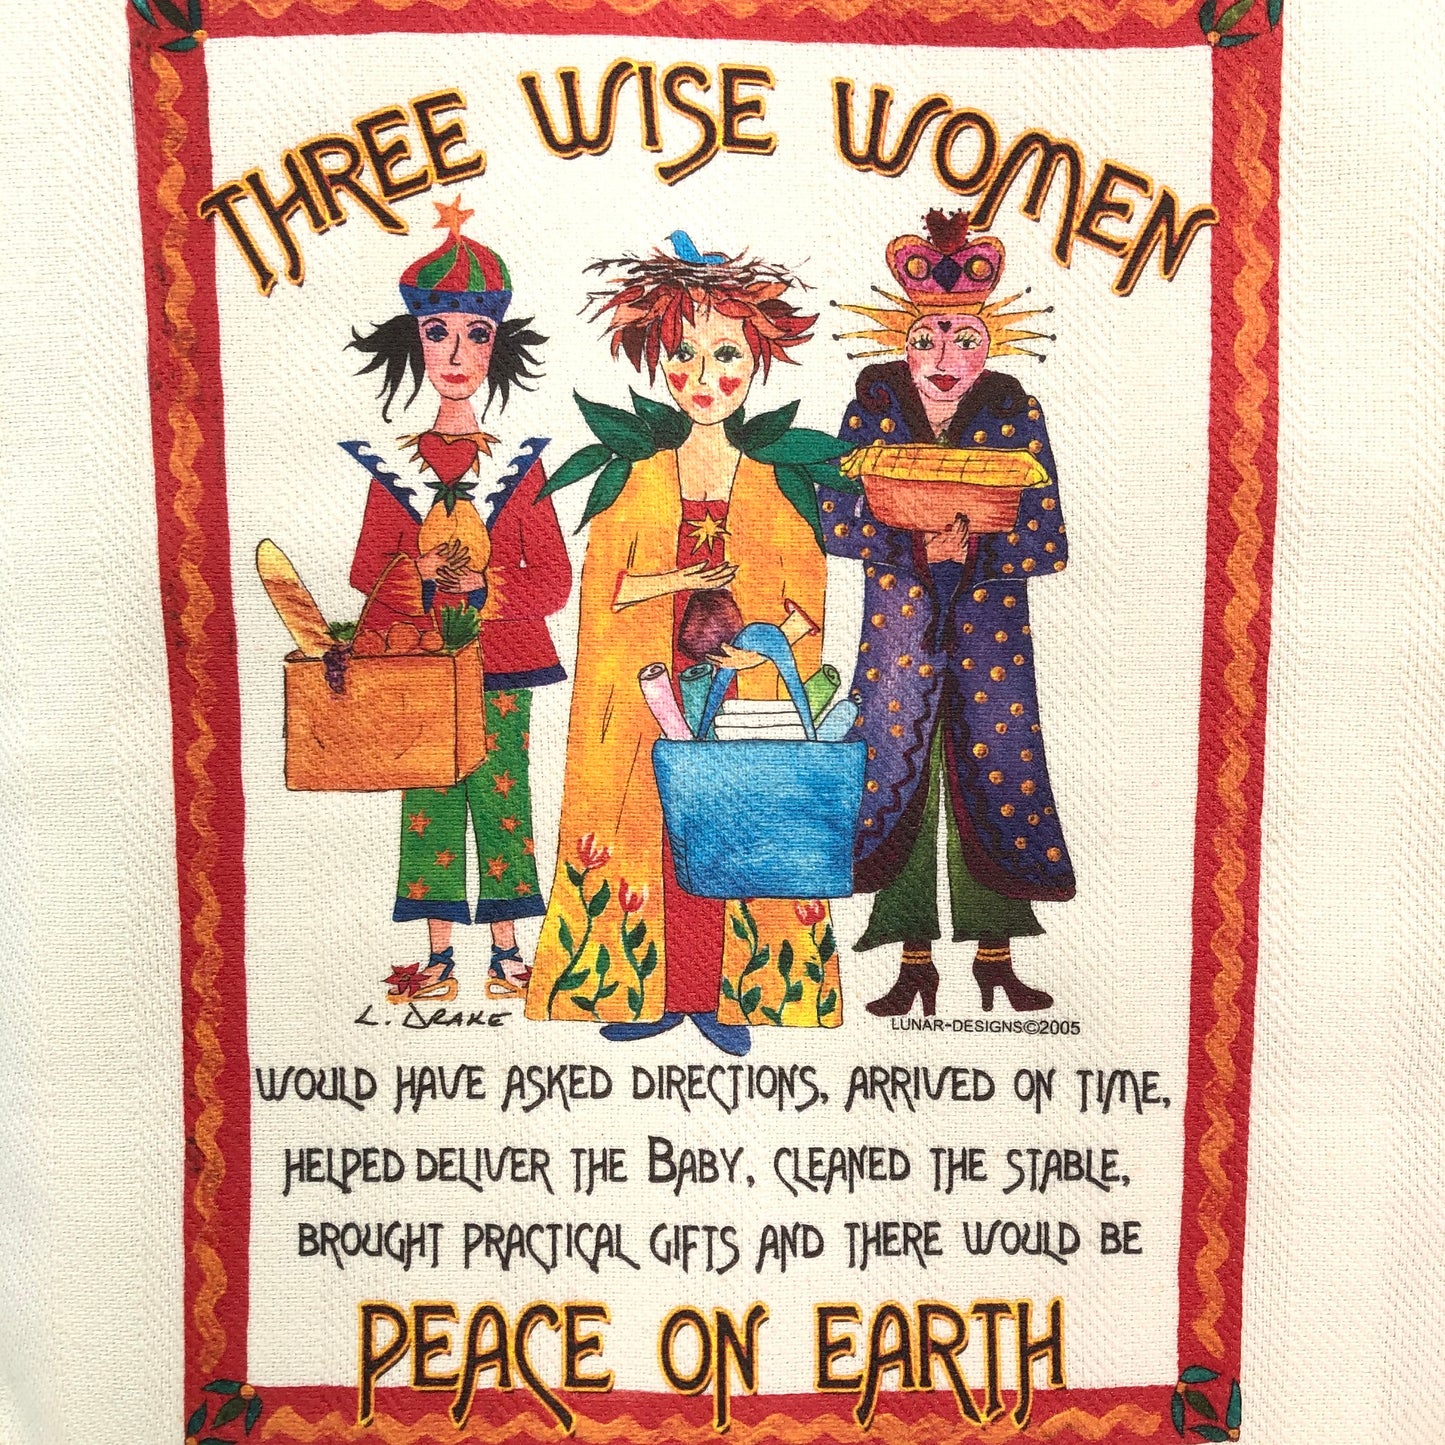 Lunar Designs Kitchen Towel #111 "Wise Women"